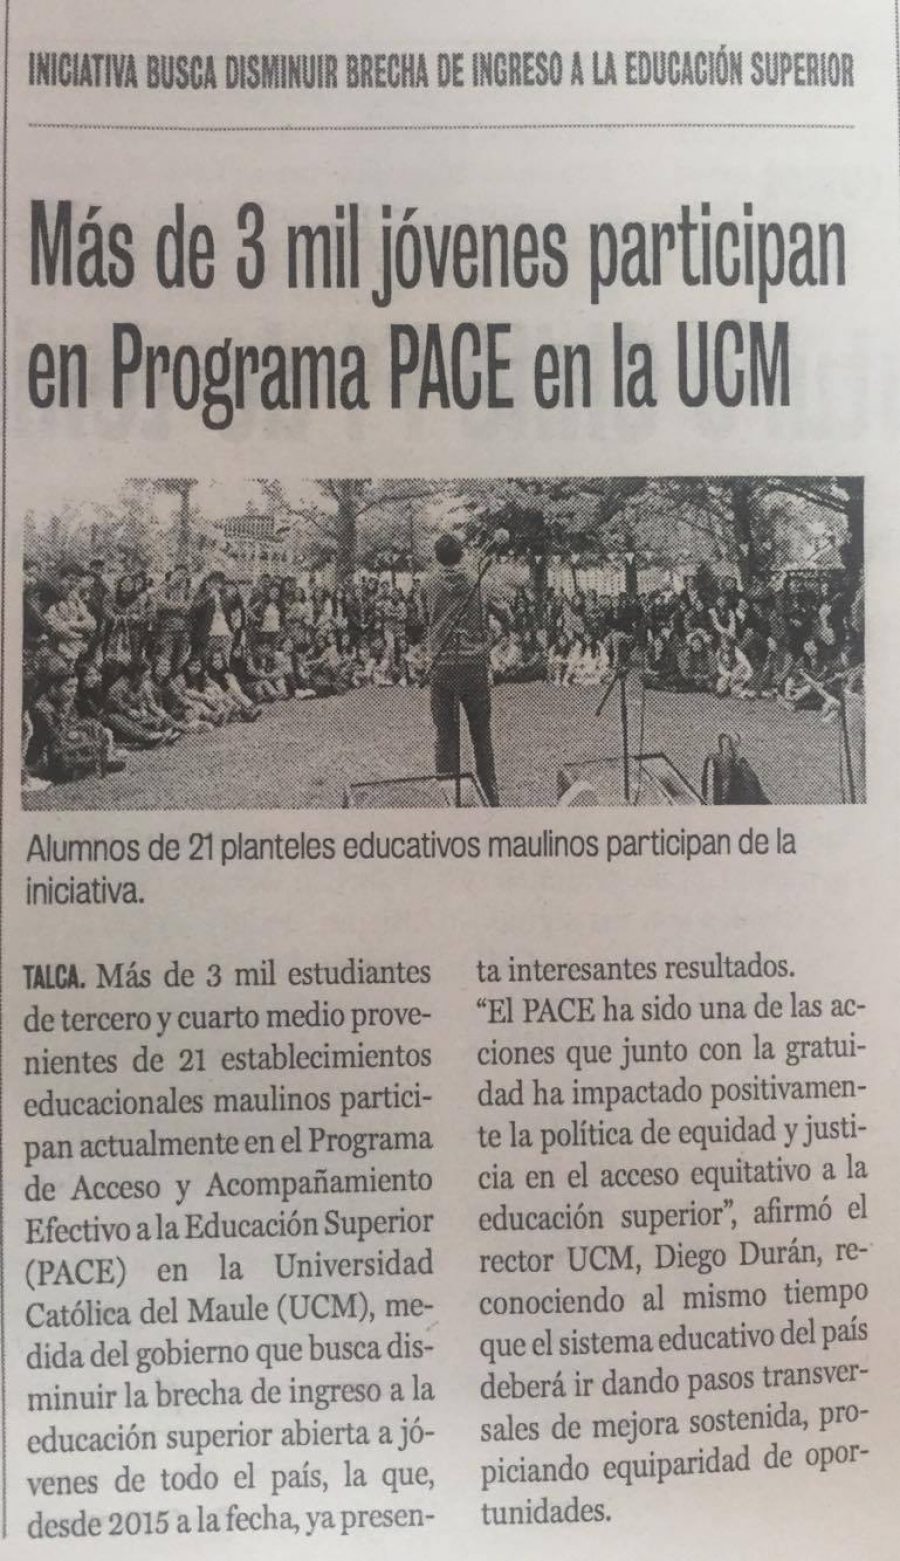 24 de noviembre en Diario La Prensa: “Más de 3 mil jóvenes participan en Programa PACE en la UCM”